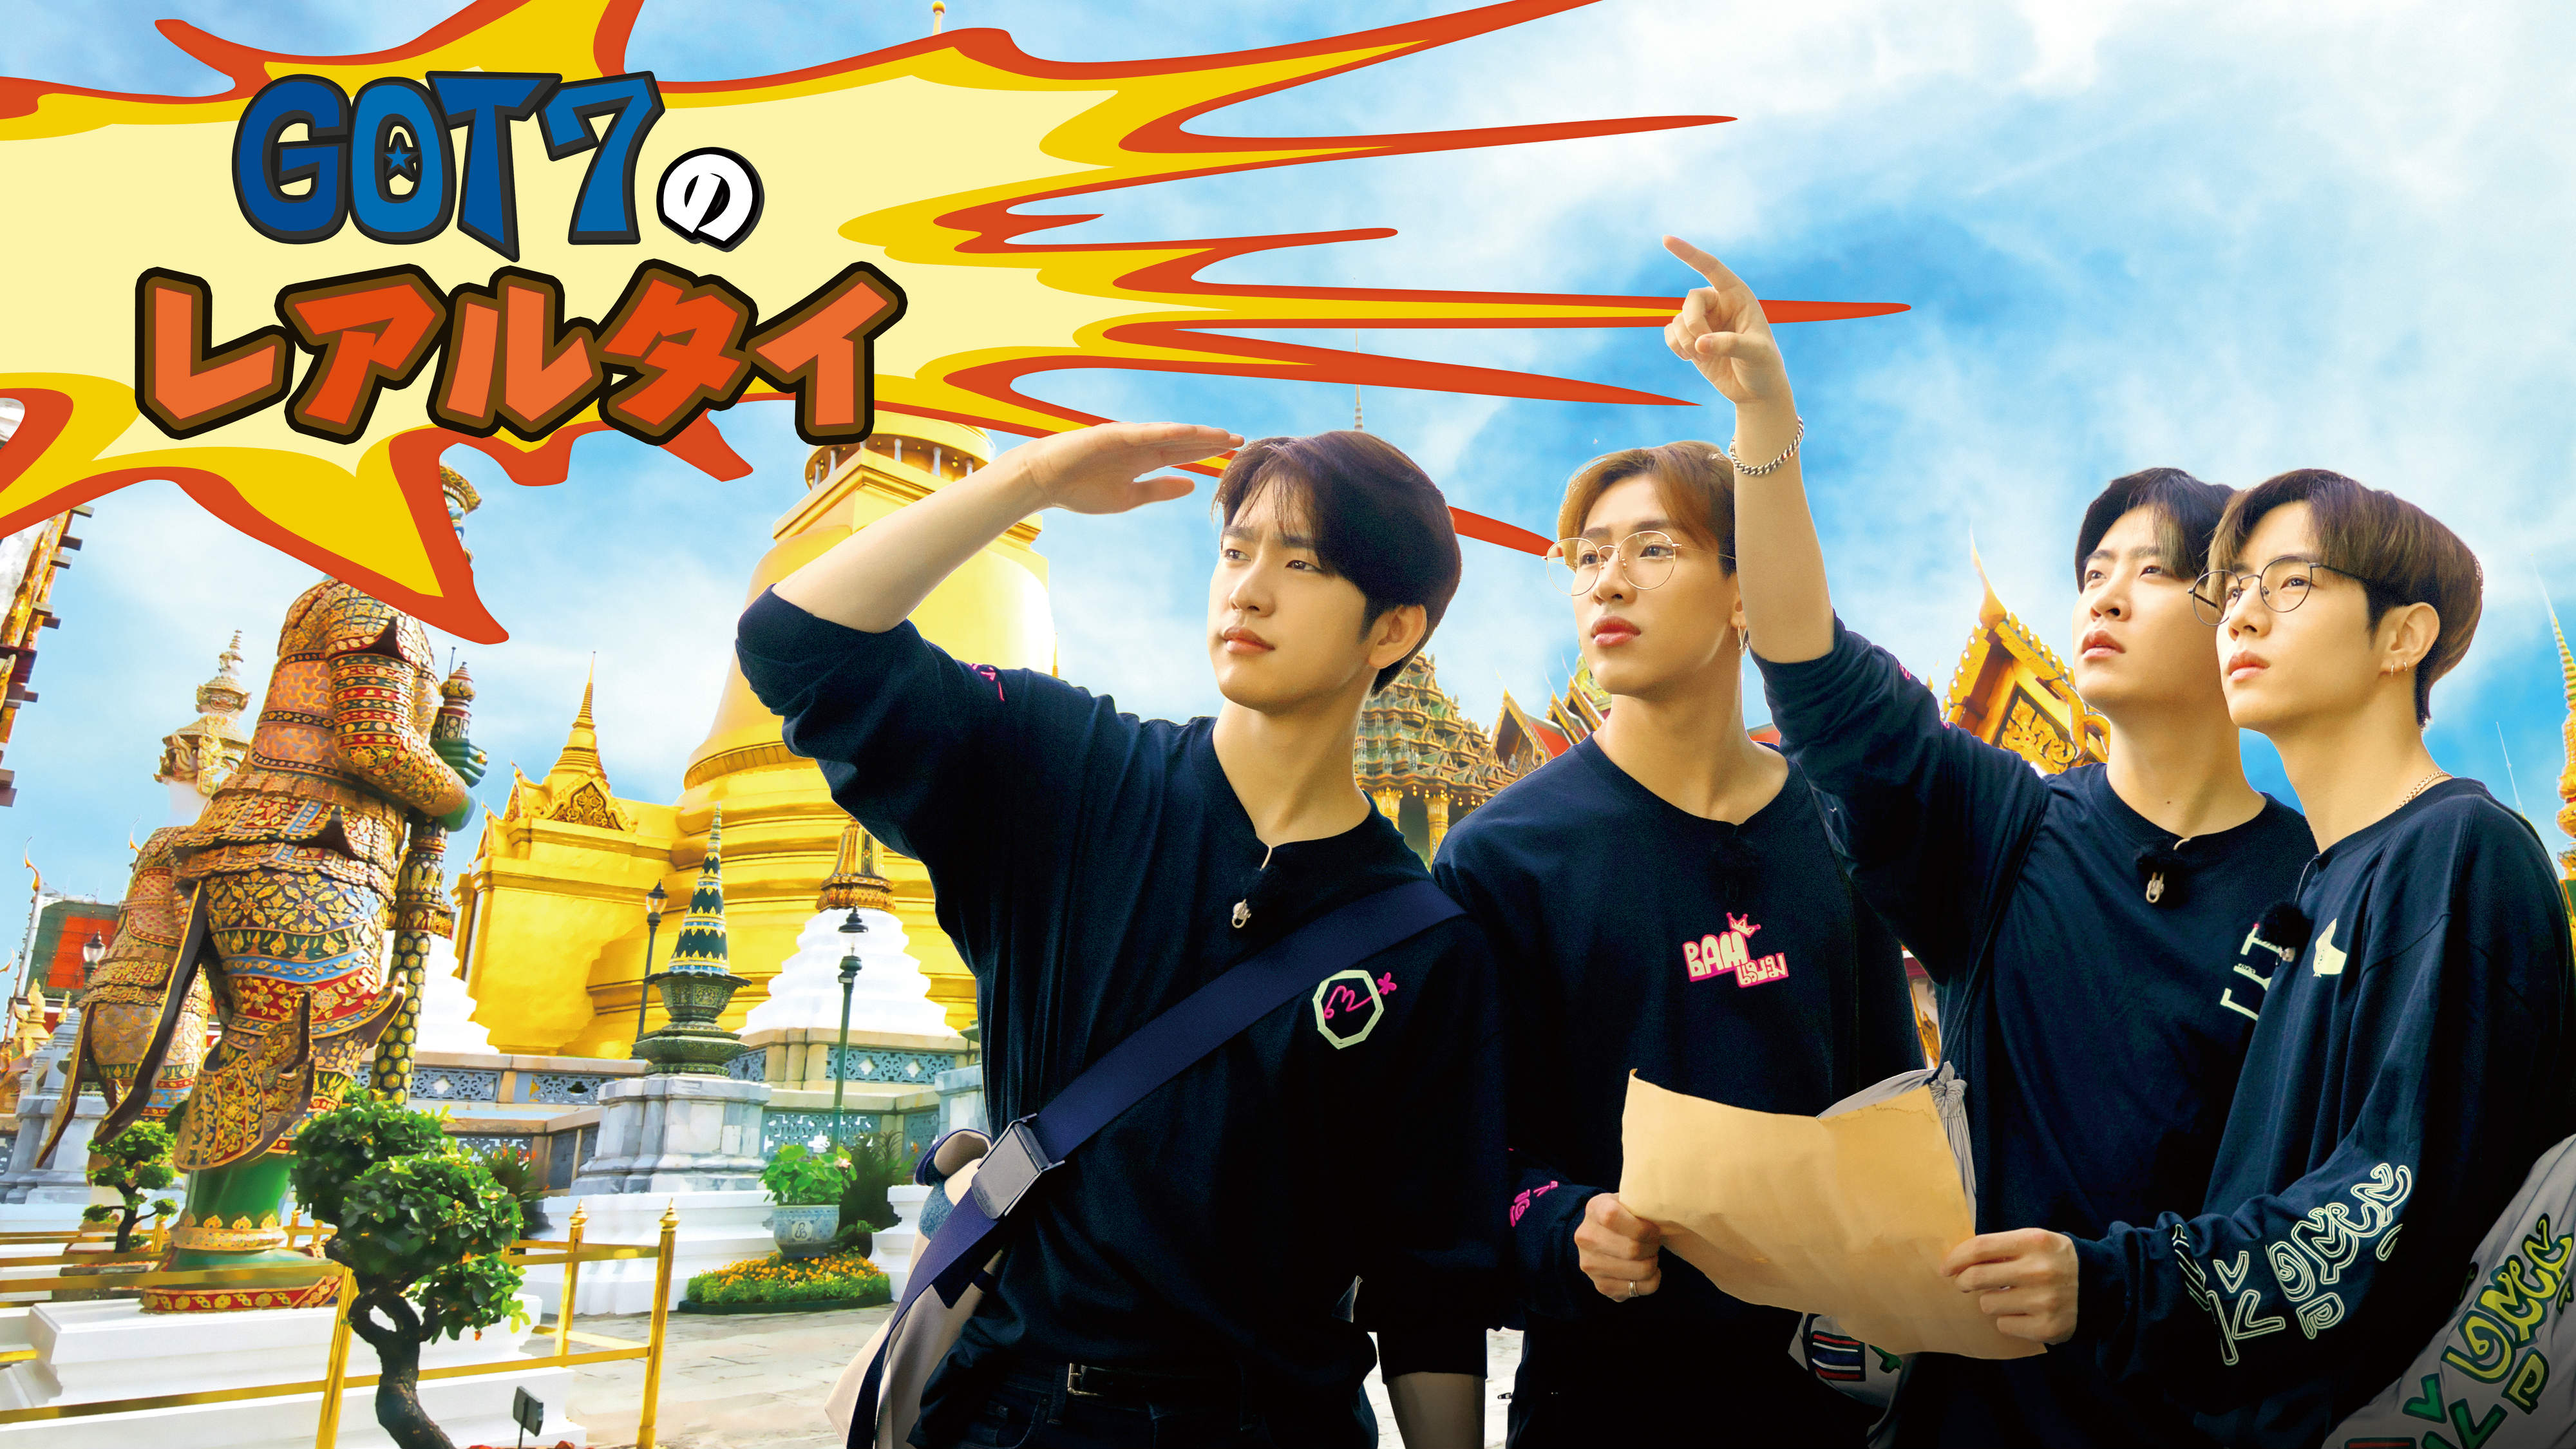 デビ ュー6 年目を迎えた Got7 のハプニング満載タイ旅行記 Got7 のレアルタイ 19 年 4 月 10 日 日本初放送決定 Mnetのプレスリリース